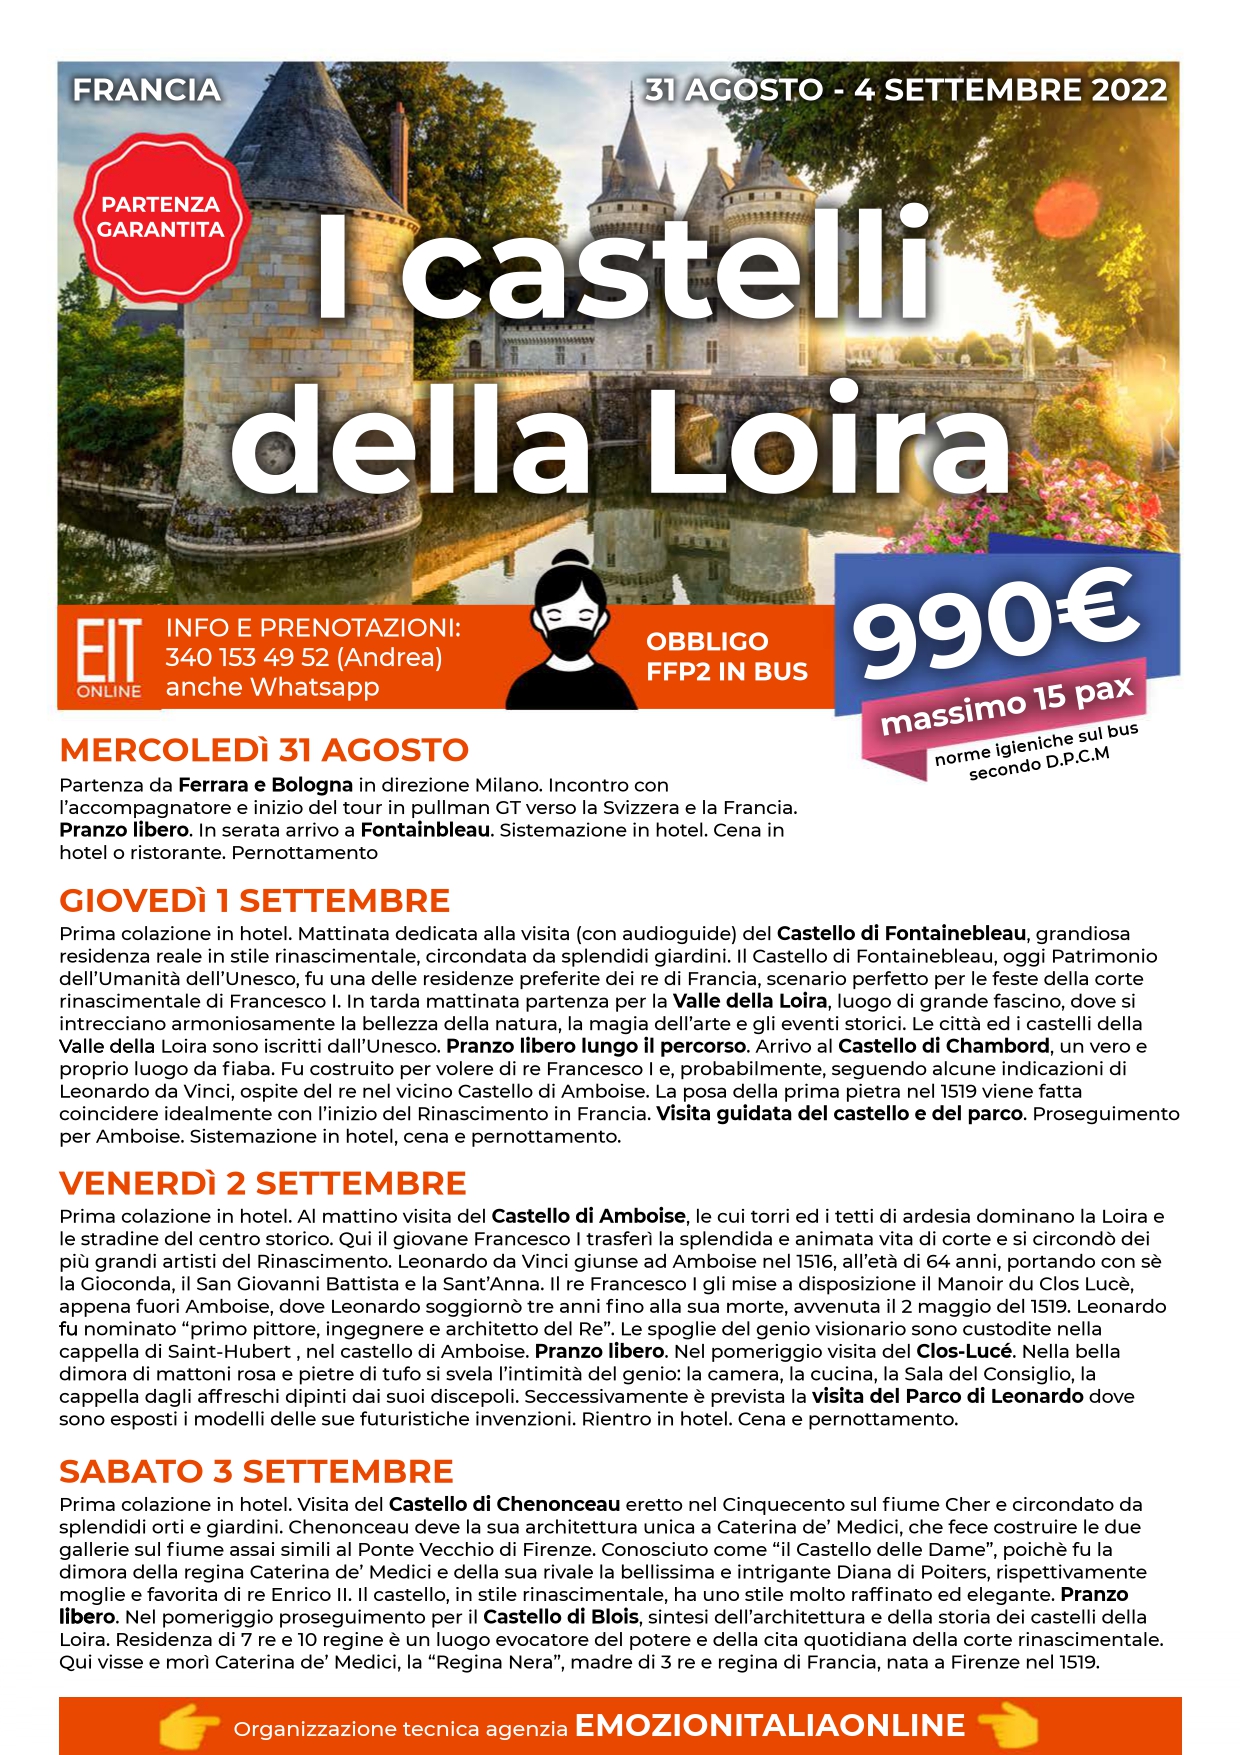 Viaggio-Organizzato-Gruppo-Castelli-Loira-Agosto-2-2022